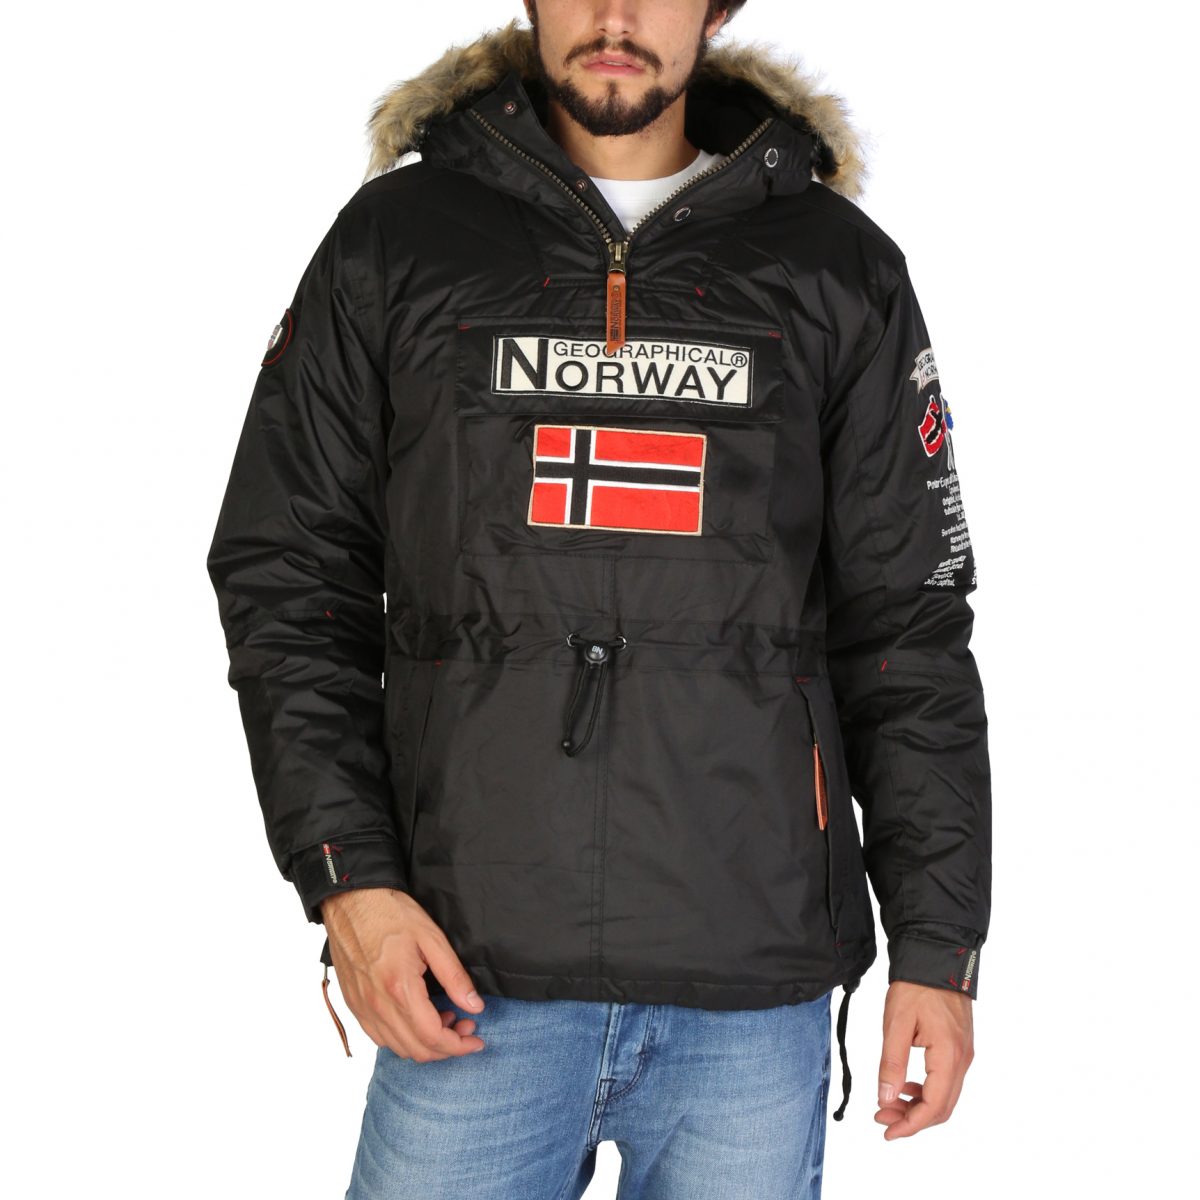 Dónde comprar chaqueta Norway